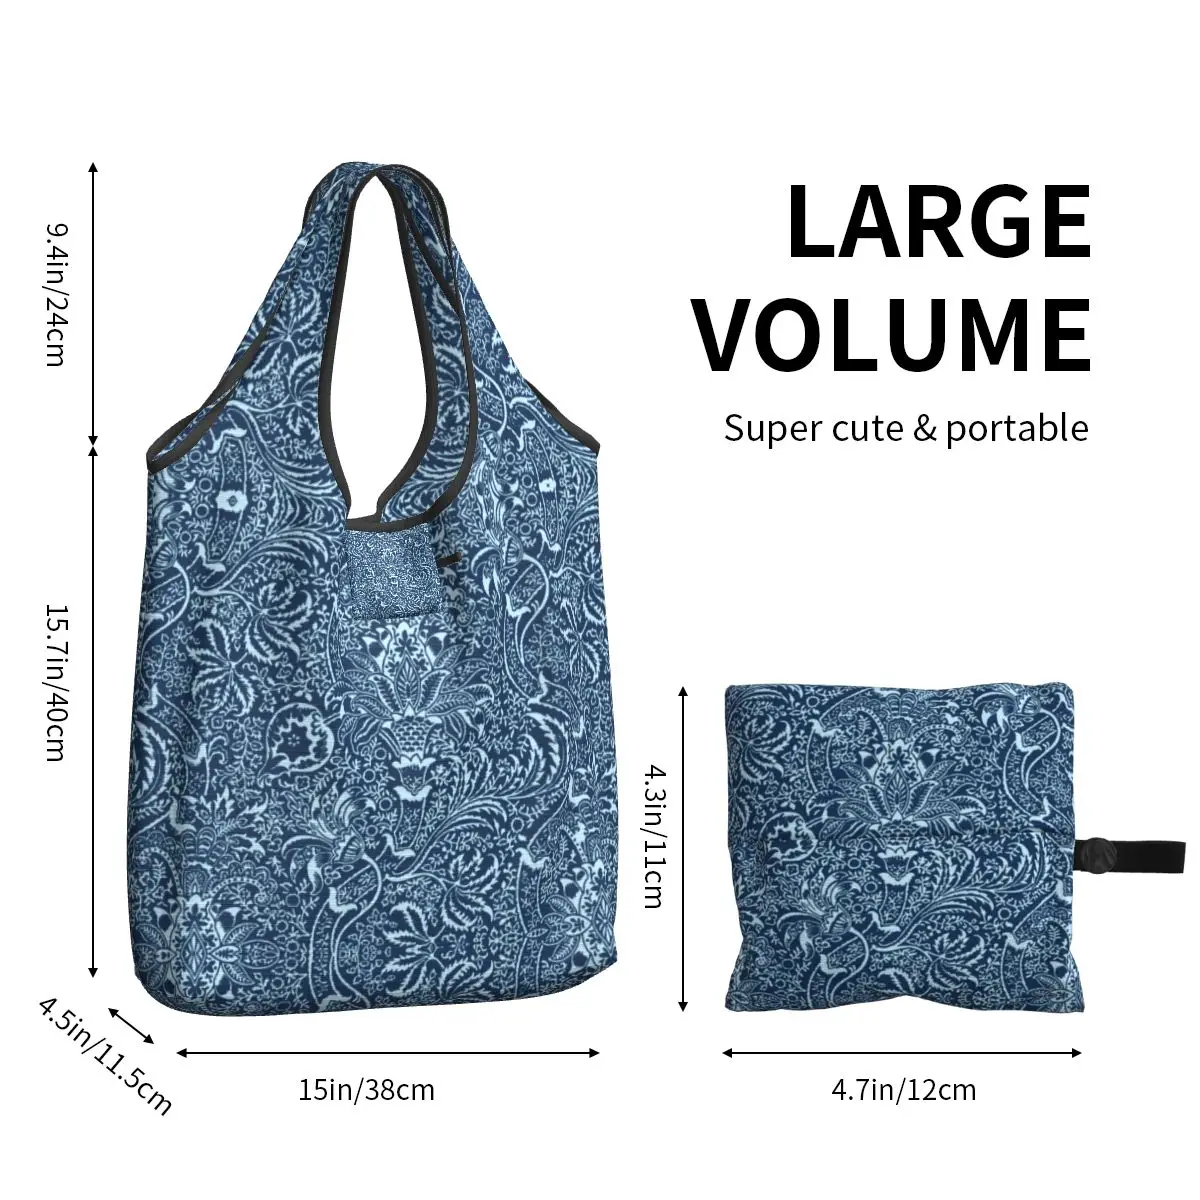 Изготовленная на заказ индийская хозяйственная сумка William Morris, женские портативные продуктовые сумки большой емкости темно-синего цвета индиго